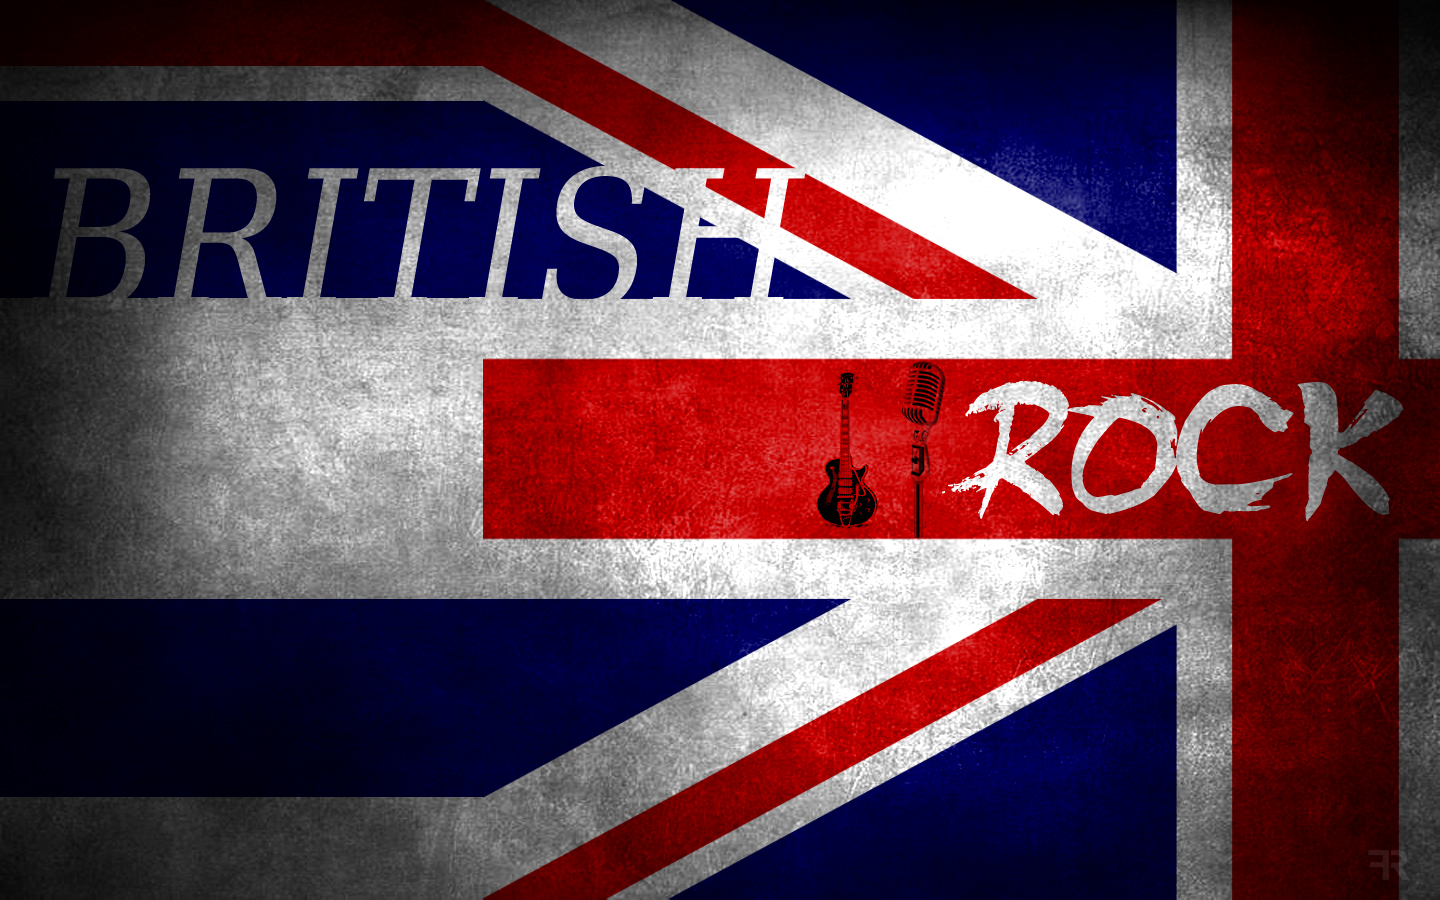 BRITISH ROCK Wallpaper by FilipR8 on DeviantArt